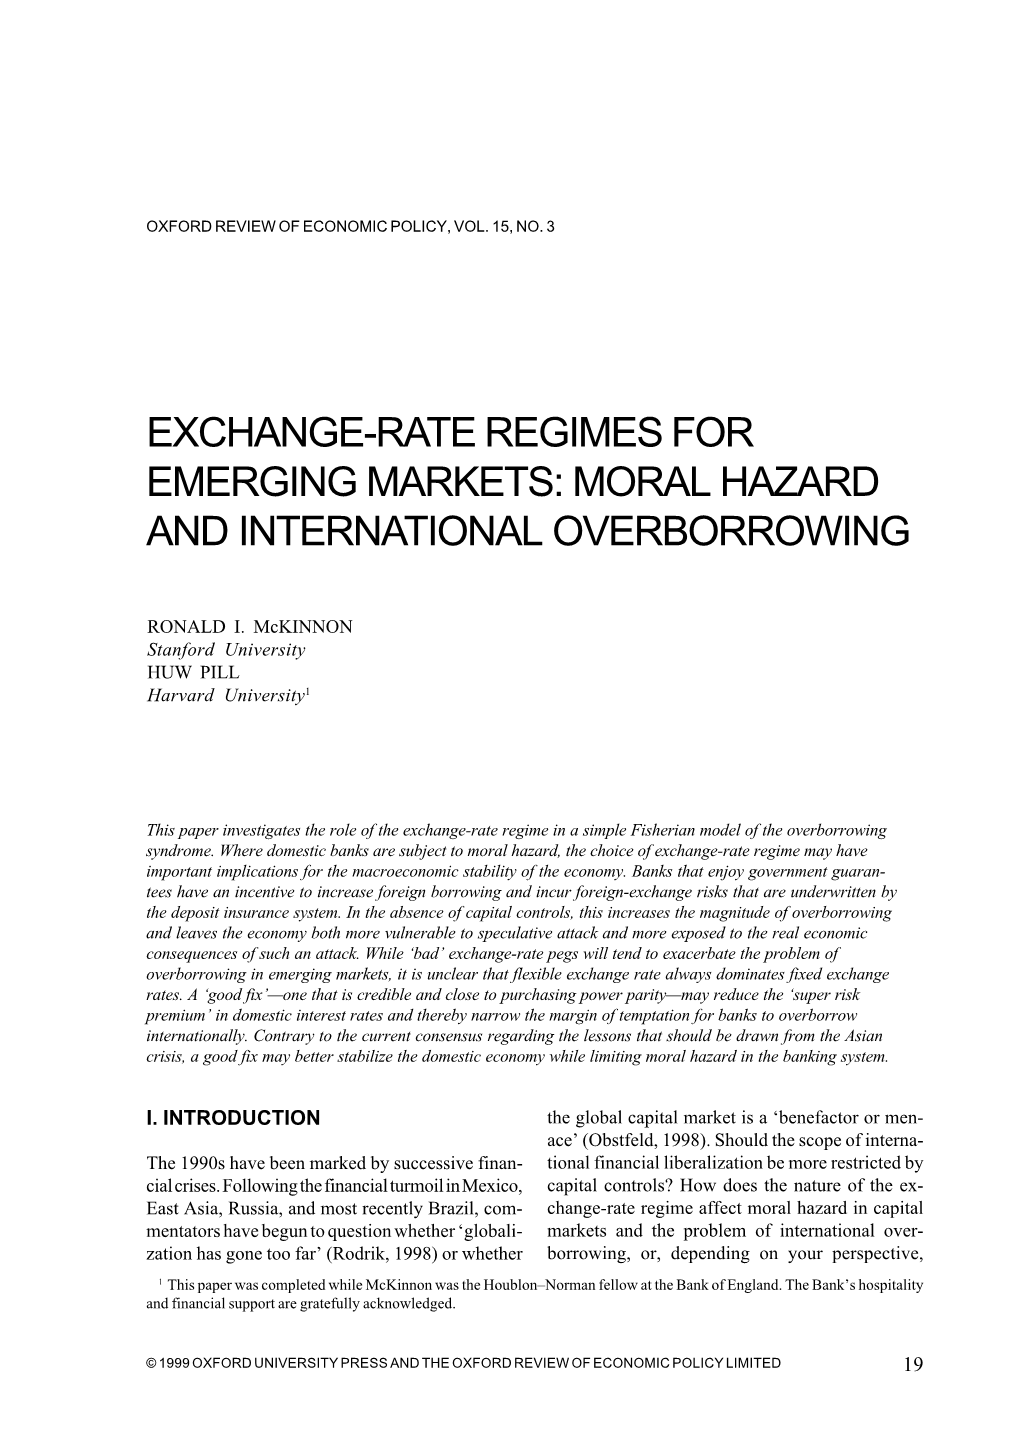 "Exchange-Rate Regimes for Emerging Markets: Moral Hazard